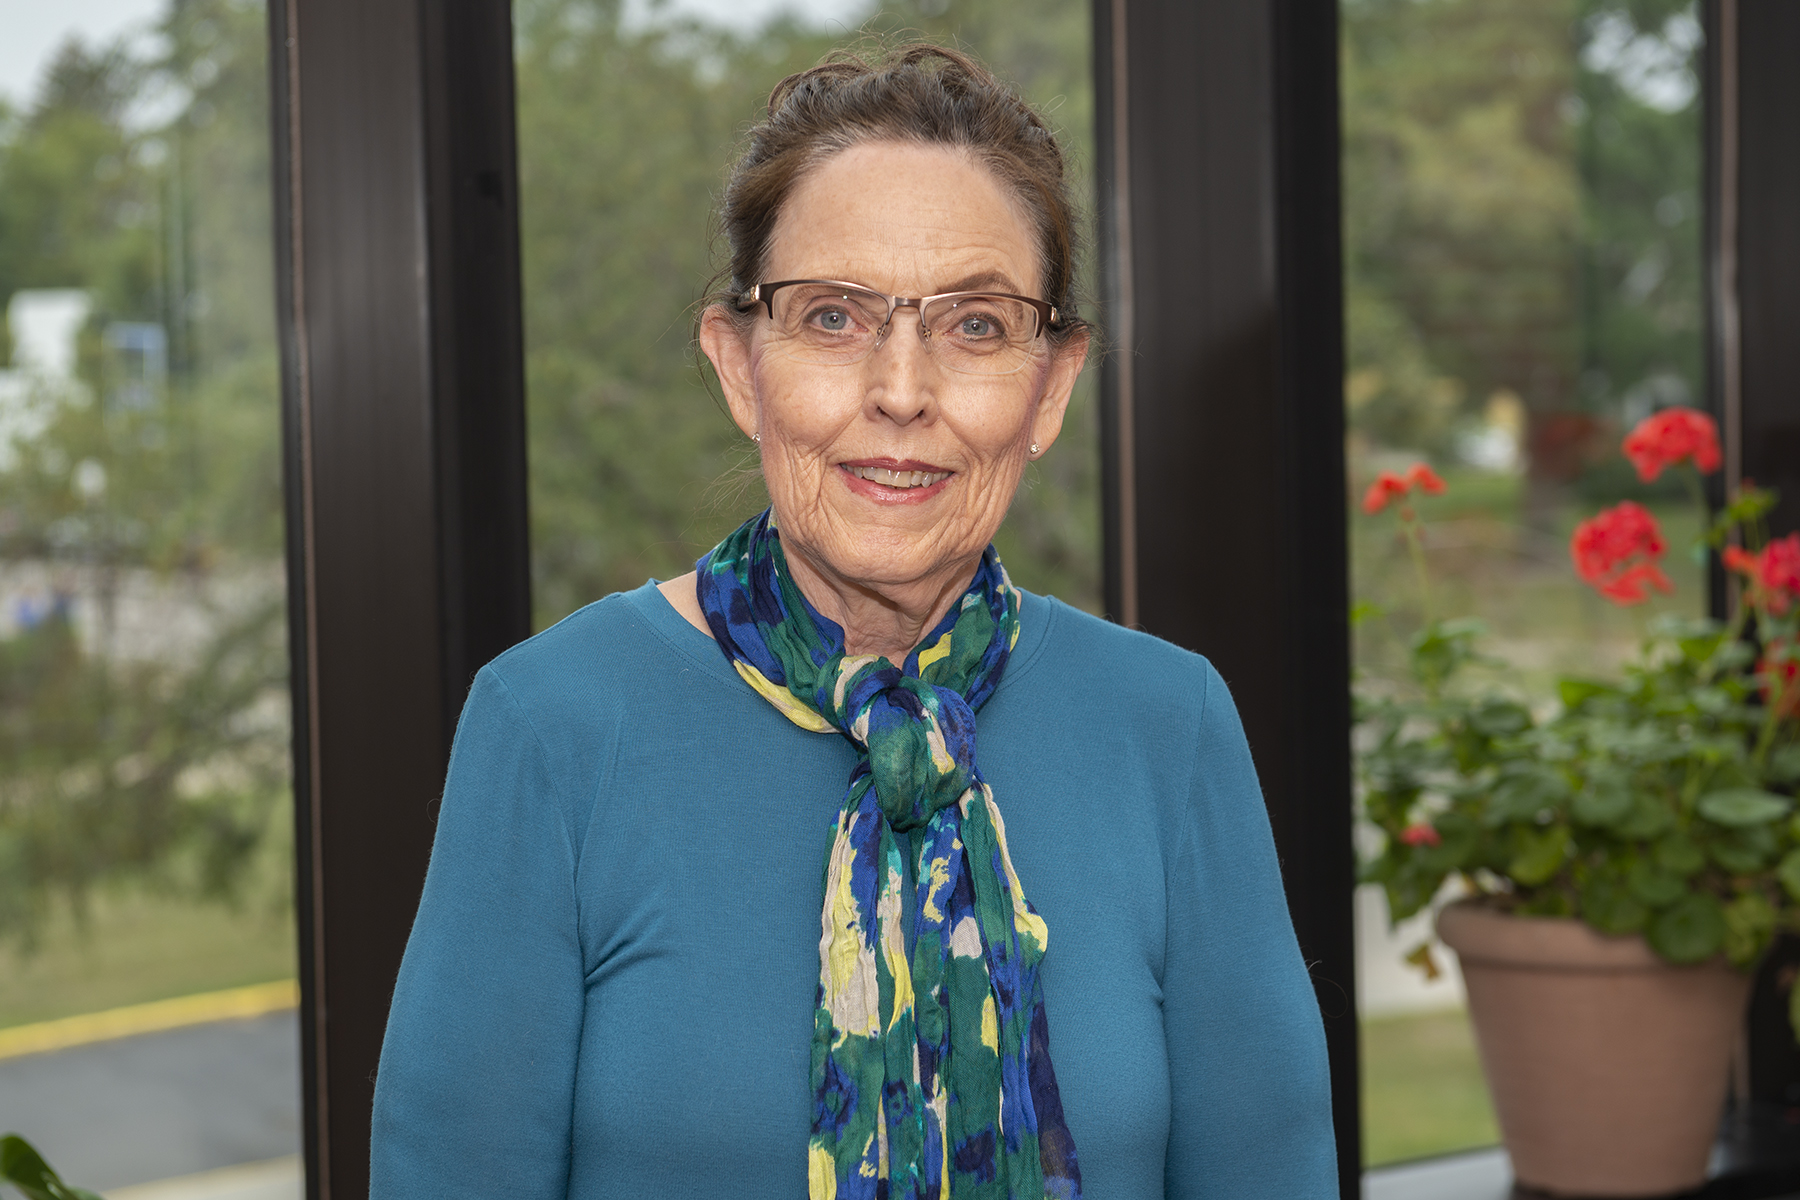 Dr. Margaret Lubke